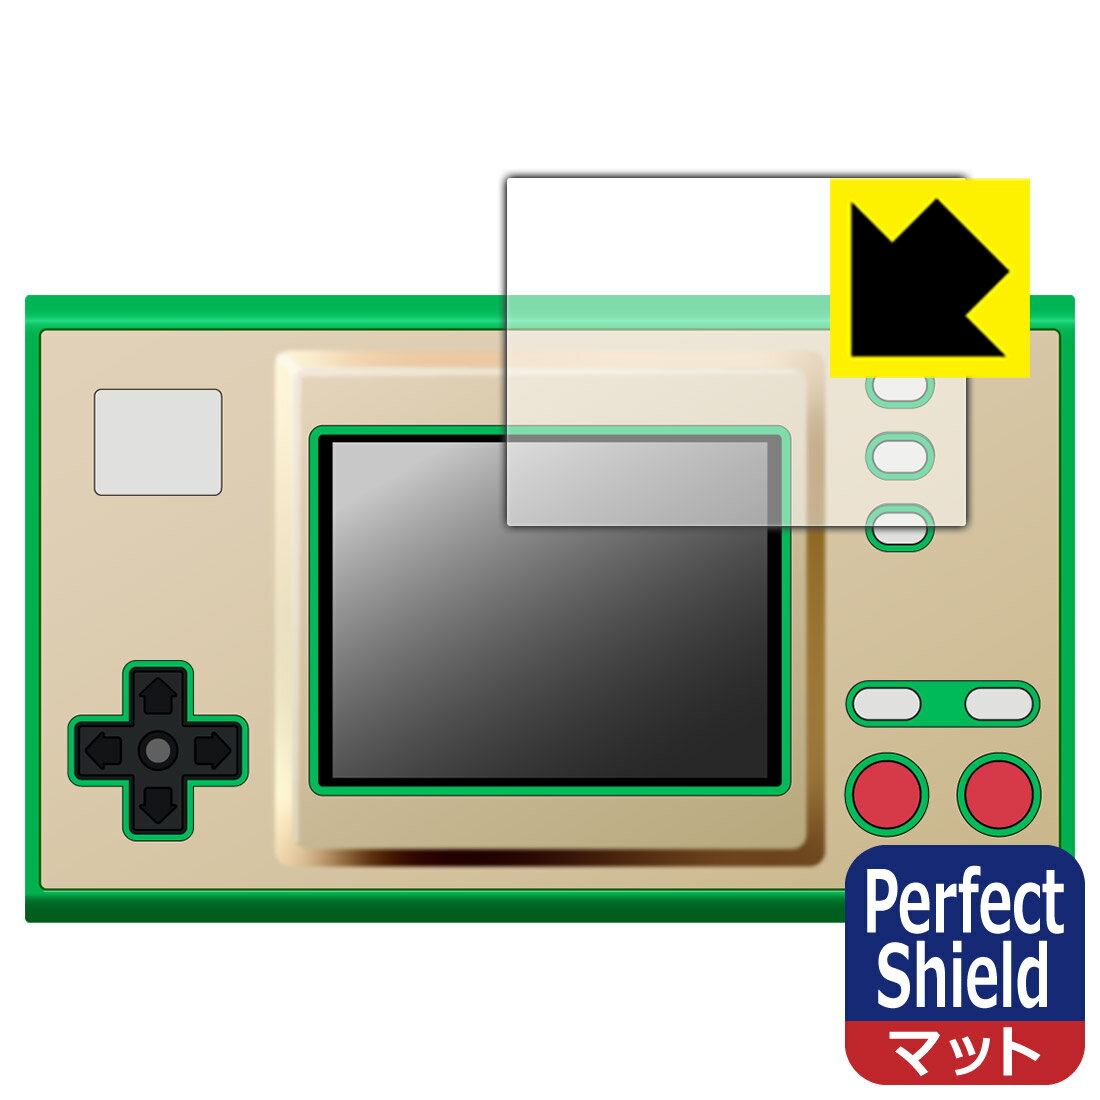 ●対応機種 : Nintendo ゲーム＆ウオッチ ゼルダの伝説 用の保護フィルムです。●製品内容 : 画面用1枚●※このページに記載されている会社名や製品名、対応機種名などは各社の商標、または登録商標です。●「Perfect Shield」は画面の反射を抑え、指のすべりもなめらかな指紋や皮脂汚れがつきにくい『アンチグレアタイプ(非光沢)の保護フィルム』●安心の国産素材を使用。日本国内の自社工場で製造し出荷しています。【ポスト投函送料無料】商品は【ポスト投函発送 (追跡可能メール便)】で発送します。お急ぎ、配達日時を指定されたい方は以下のクーポンを同時購入ください。【お急ぎ便クーポン】　プラス110円(税込)で速達扱いでの発送。お届けはポストへの投函となります。【配達日時指定クーポン】　プラス550円(税込)で配達日時を指定し、宅配便で発送させていただきます。【お急ぎ便クーポン】はこちらをクリック【配達日時指定クーポン】はこちらをクリック 　 表面に微細な凹凸を作ることにより、外光を乱反射させギラツキを抑える「アンチグレア加工」がされております。 屋外での太陽光の映り込み、屋内でも蛍光灯などの映り込みが気になるシーンが多い方におすすめです。 また、指紋がついた場合でも目立ちにくいという特長があります。 指滑りはさらさらな使用感でストレスのない操作・入力が可能です。 ハードコート加工がされており、キズや擦れに強くなっています。簡単にキズがつかず長くご利用いただけます。 反射防止のアンチグレア加工で指紋が目立ちにくい上、表面は防汚コーティングがされており、皮脂や汚れがつきにくく、また、落ちやすくなっています。 接着面は気泡の入りにくい特殊な自己吸着タイプです。素材に柔軟性があり、貼り付け作業も簡単にできます。また、はがすときにガラス製フィルムのように割れてしまうことはありません。 貼り直しが何度でもできるので、正しい位置へ貼り付けられるまでやり直すことができます。 最高級グレードの国産素材を日本国内の弊社工場で加工している完全な Made in Japan です。安心の品質をお届けします。 使用上の注意 ●本製品は機器の画面をキズなどから保護するフィルムです。他の目的にはご使用にならないでください。 ●本製品は液晶保護および機器本体を完全に保護することを保証するものではありません。機器の破損、損傷、故障、その他損害につきましては一切の責任を負いかねます。 ●製品の性質上、画面操作の反応が変化したり、表示等が変化して見える場合がございます。 ●貼り付け作業時の失敗(位置ズレ、汚れ、ゆがみ、折れ、気泡など)および取り外し作業時の破損、損傷などについては、一切の責任を負いかねます。 ●水に濡れた状態でのご使用は吸着力の低下などにより、保護フィルムがはがれてしまう場合がございます。防水対応の機器でご使用の場合はご注意ください。 ●アルコール類やその他薬剤を本製品に付着させないでください。表面のコーティングや吸着面が変質するおそれがあります。 ●品質向上のため、仕様などを予告なく変更する場合がございますので、予めご了承ください。